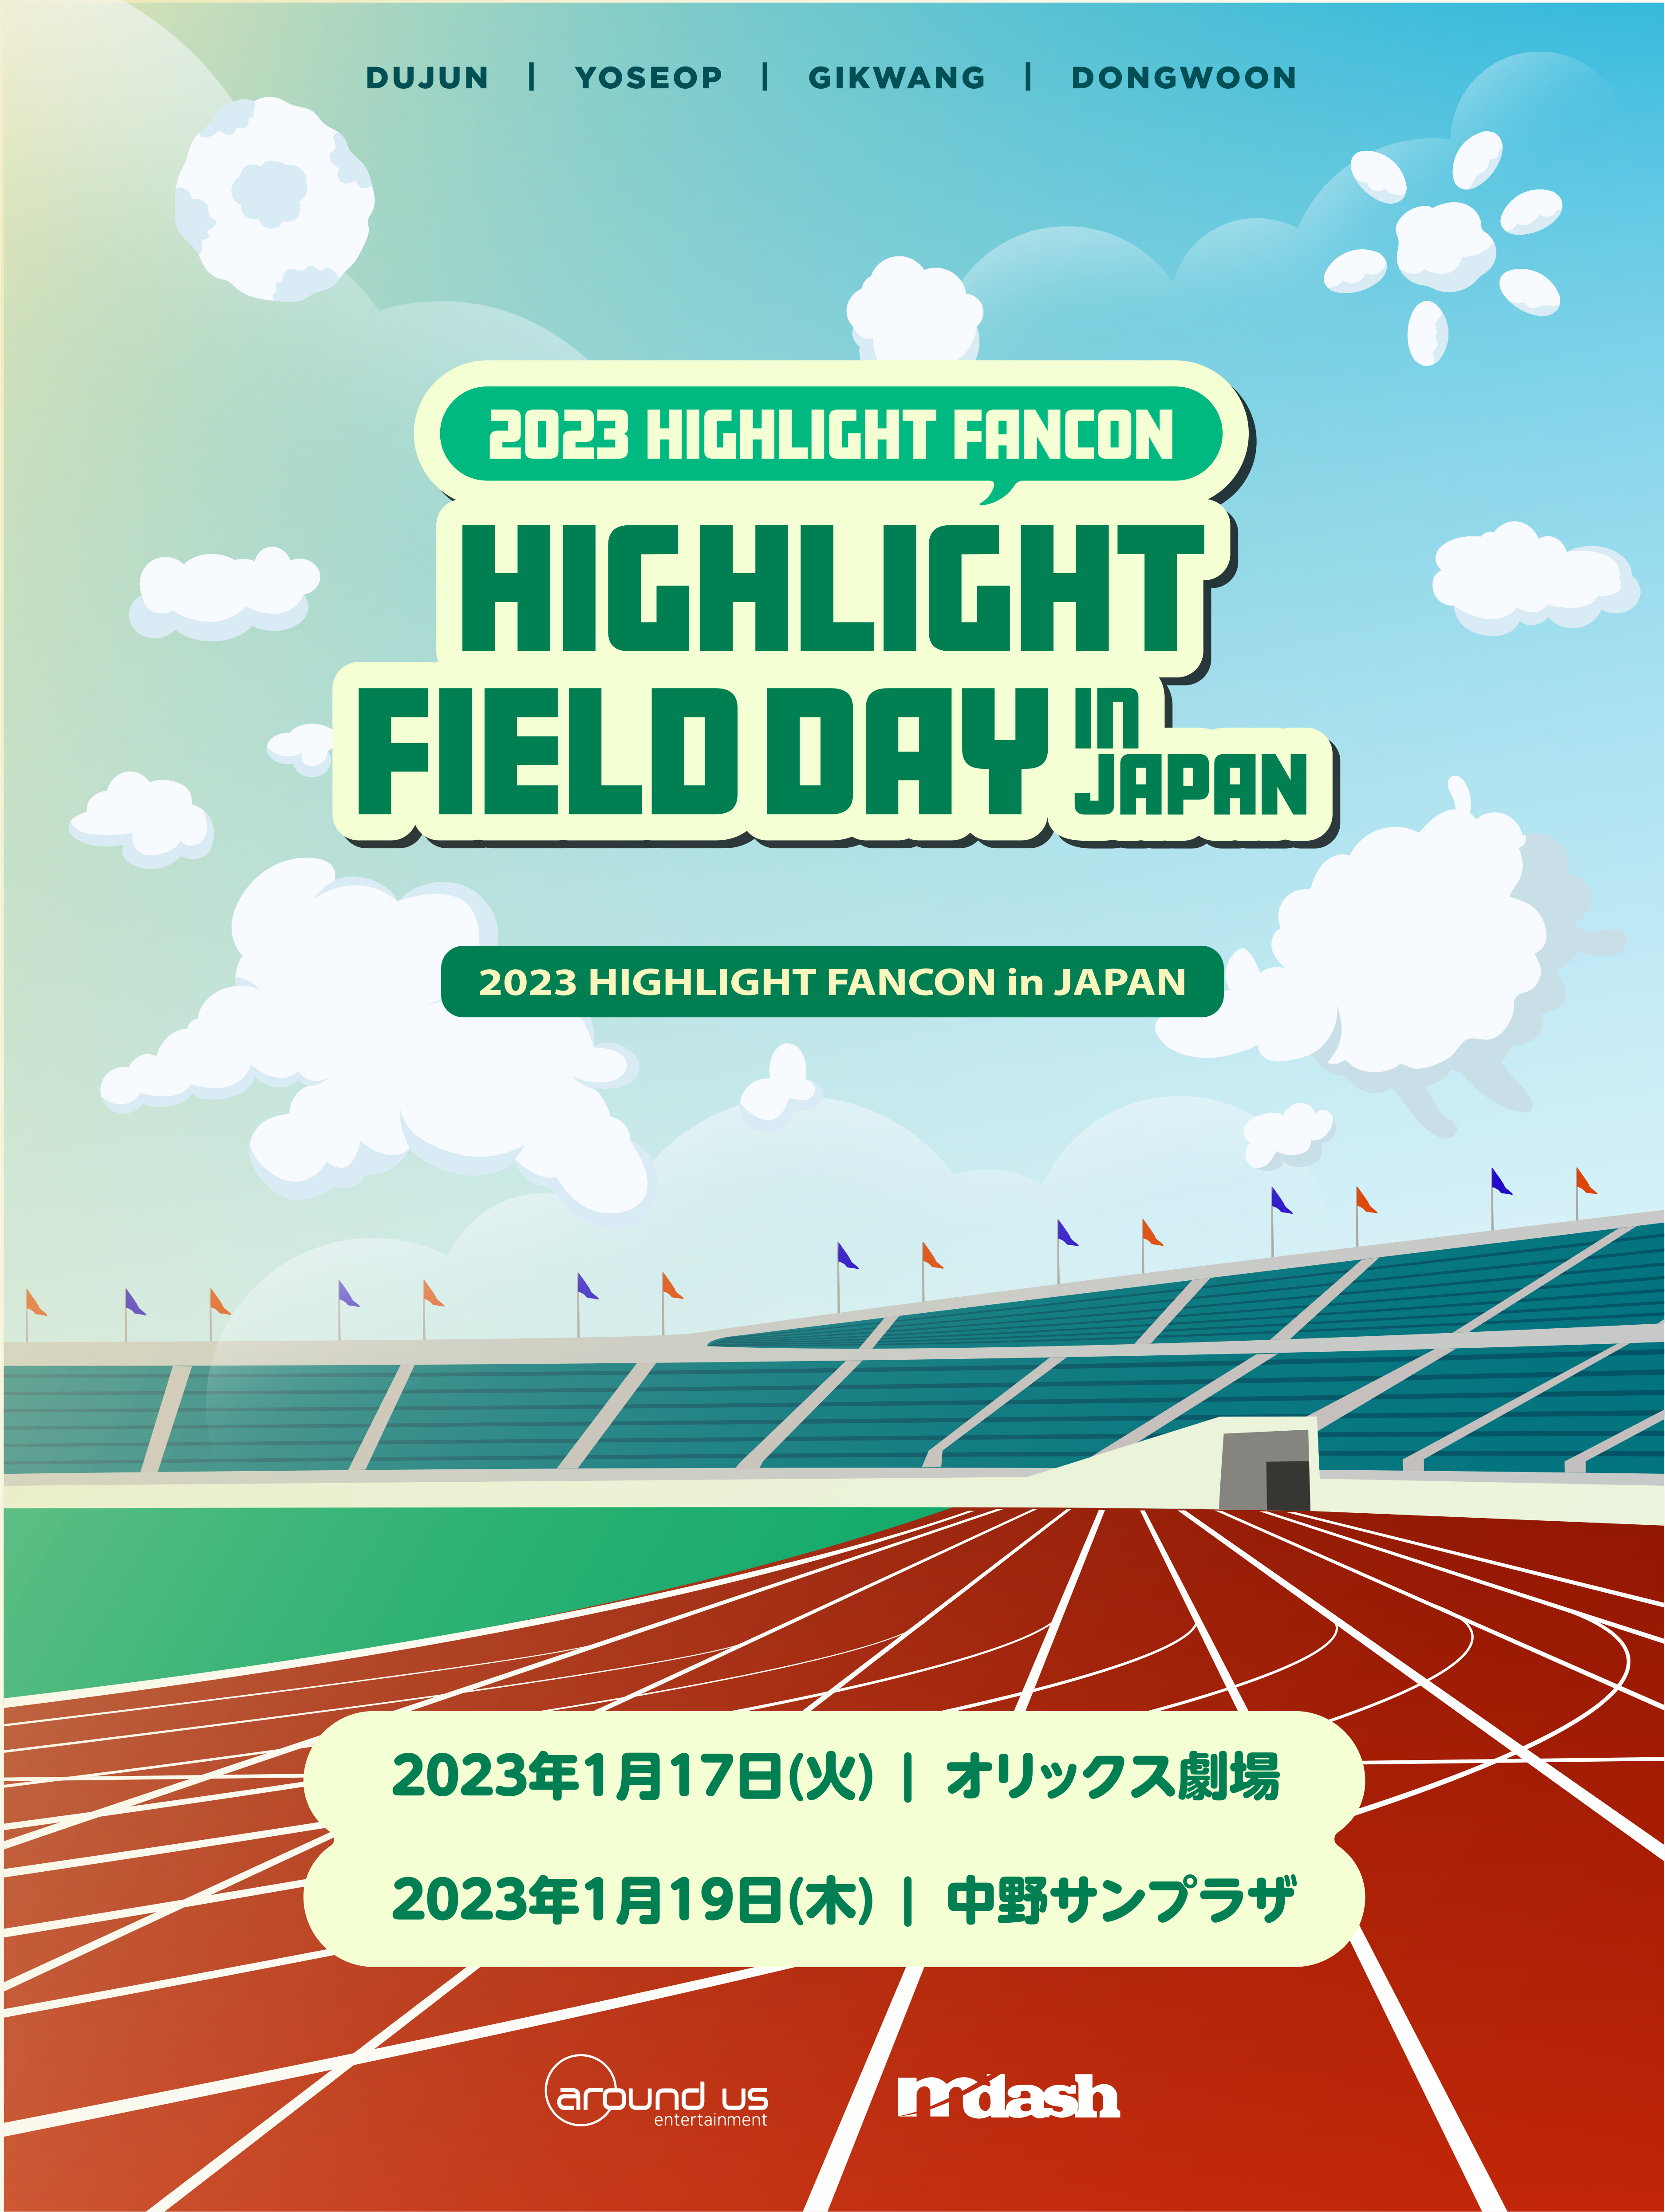 2023 HIGHLIGHT FANCON [FIELD DAY] in JAPAN